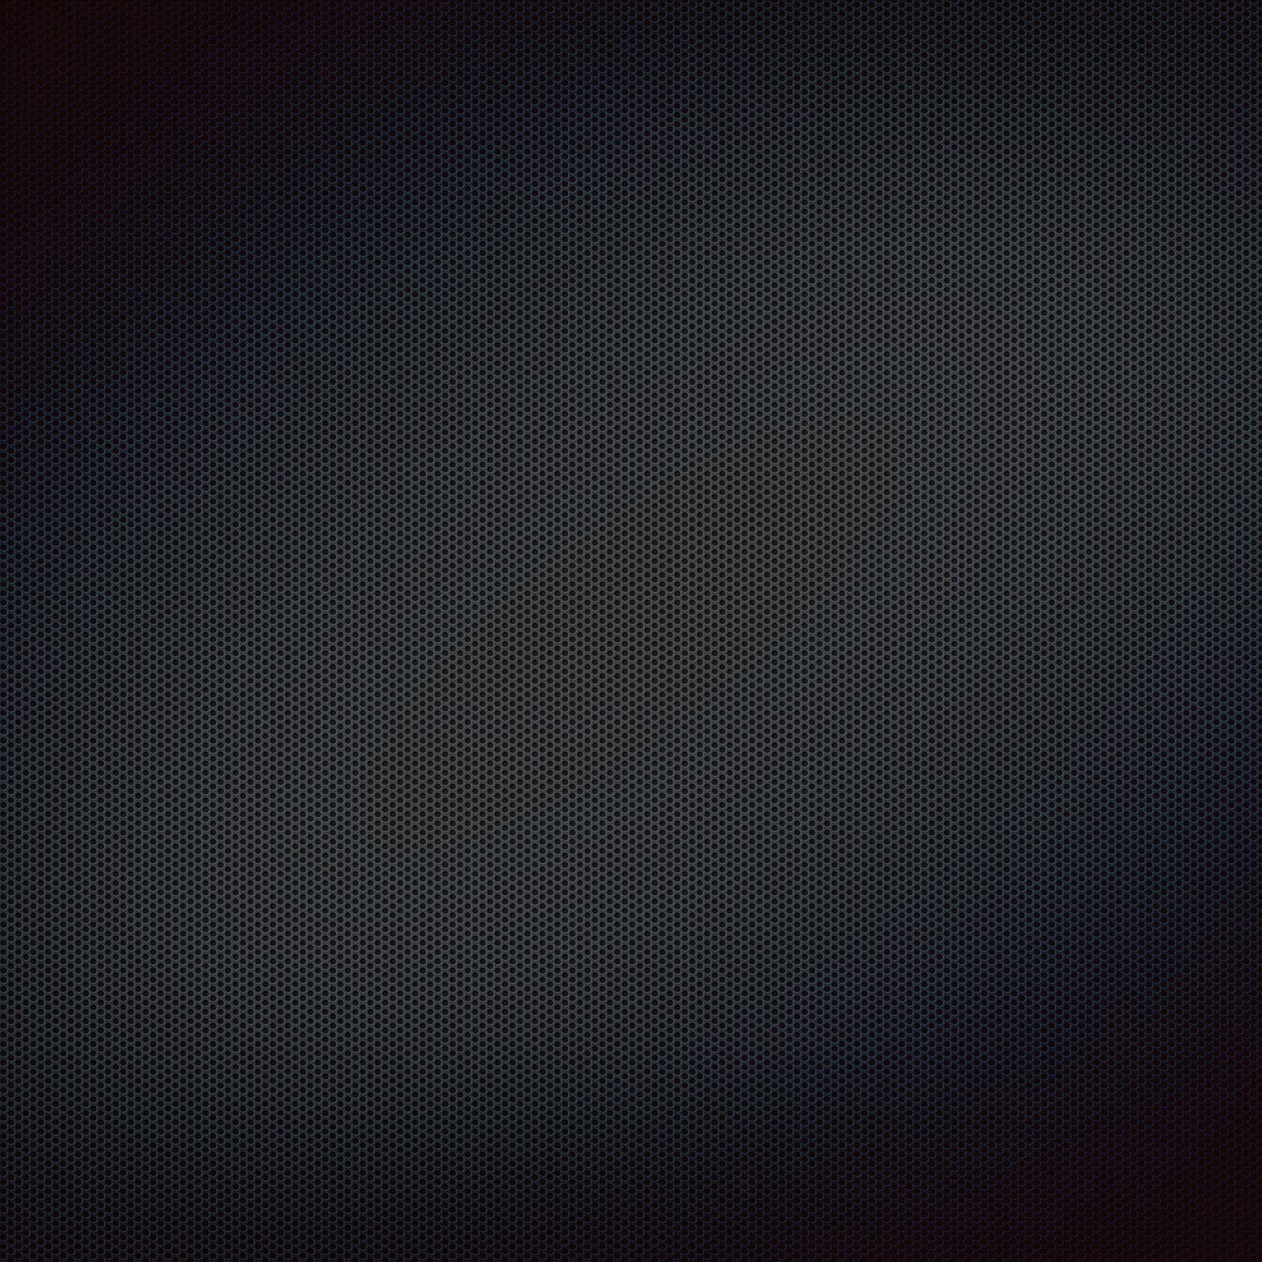 Black Grill Texture Wallpaper for Apple iPad mini